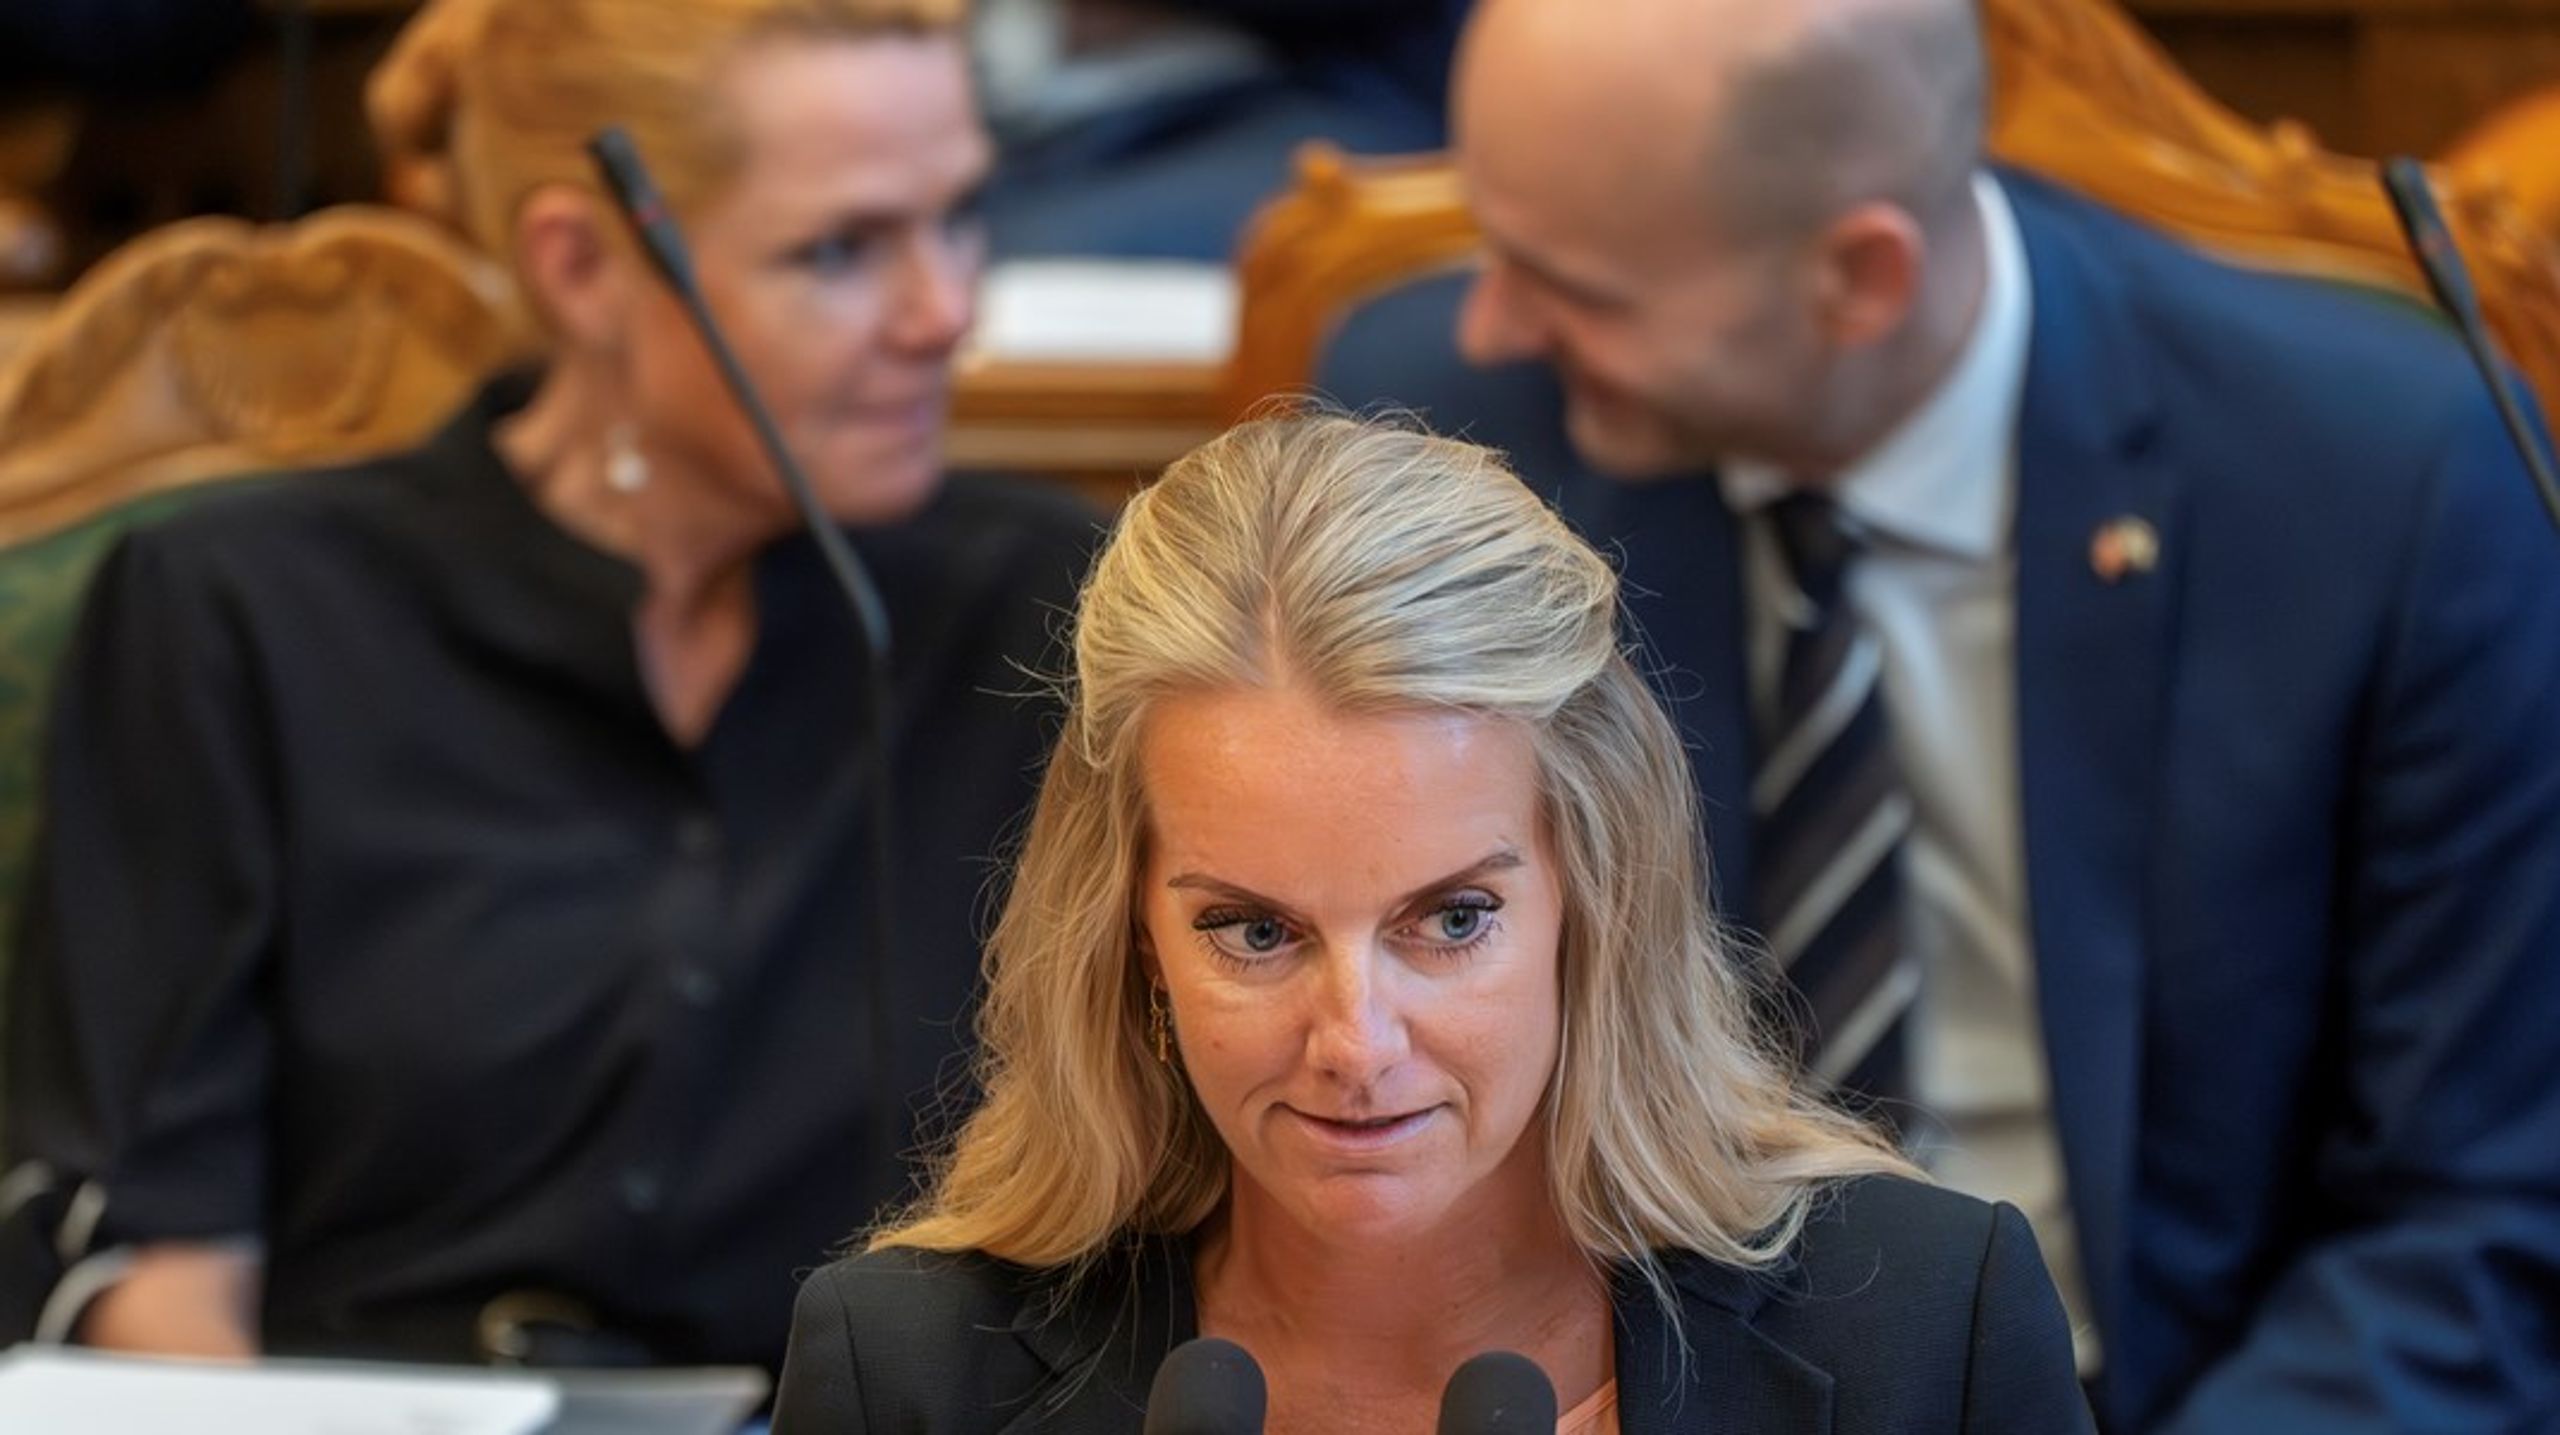 Pernille Vermund er på
vej videre i sin færd som karrierepolitiker efter at have været lokalpolitiker
for Konservative og folketingsmedlem og førerhund i Nye Borgerlige, skriver
Simon Emil Ammitzbøll-Bille.